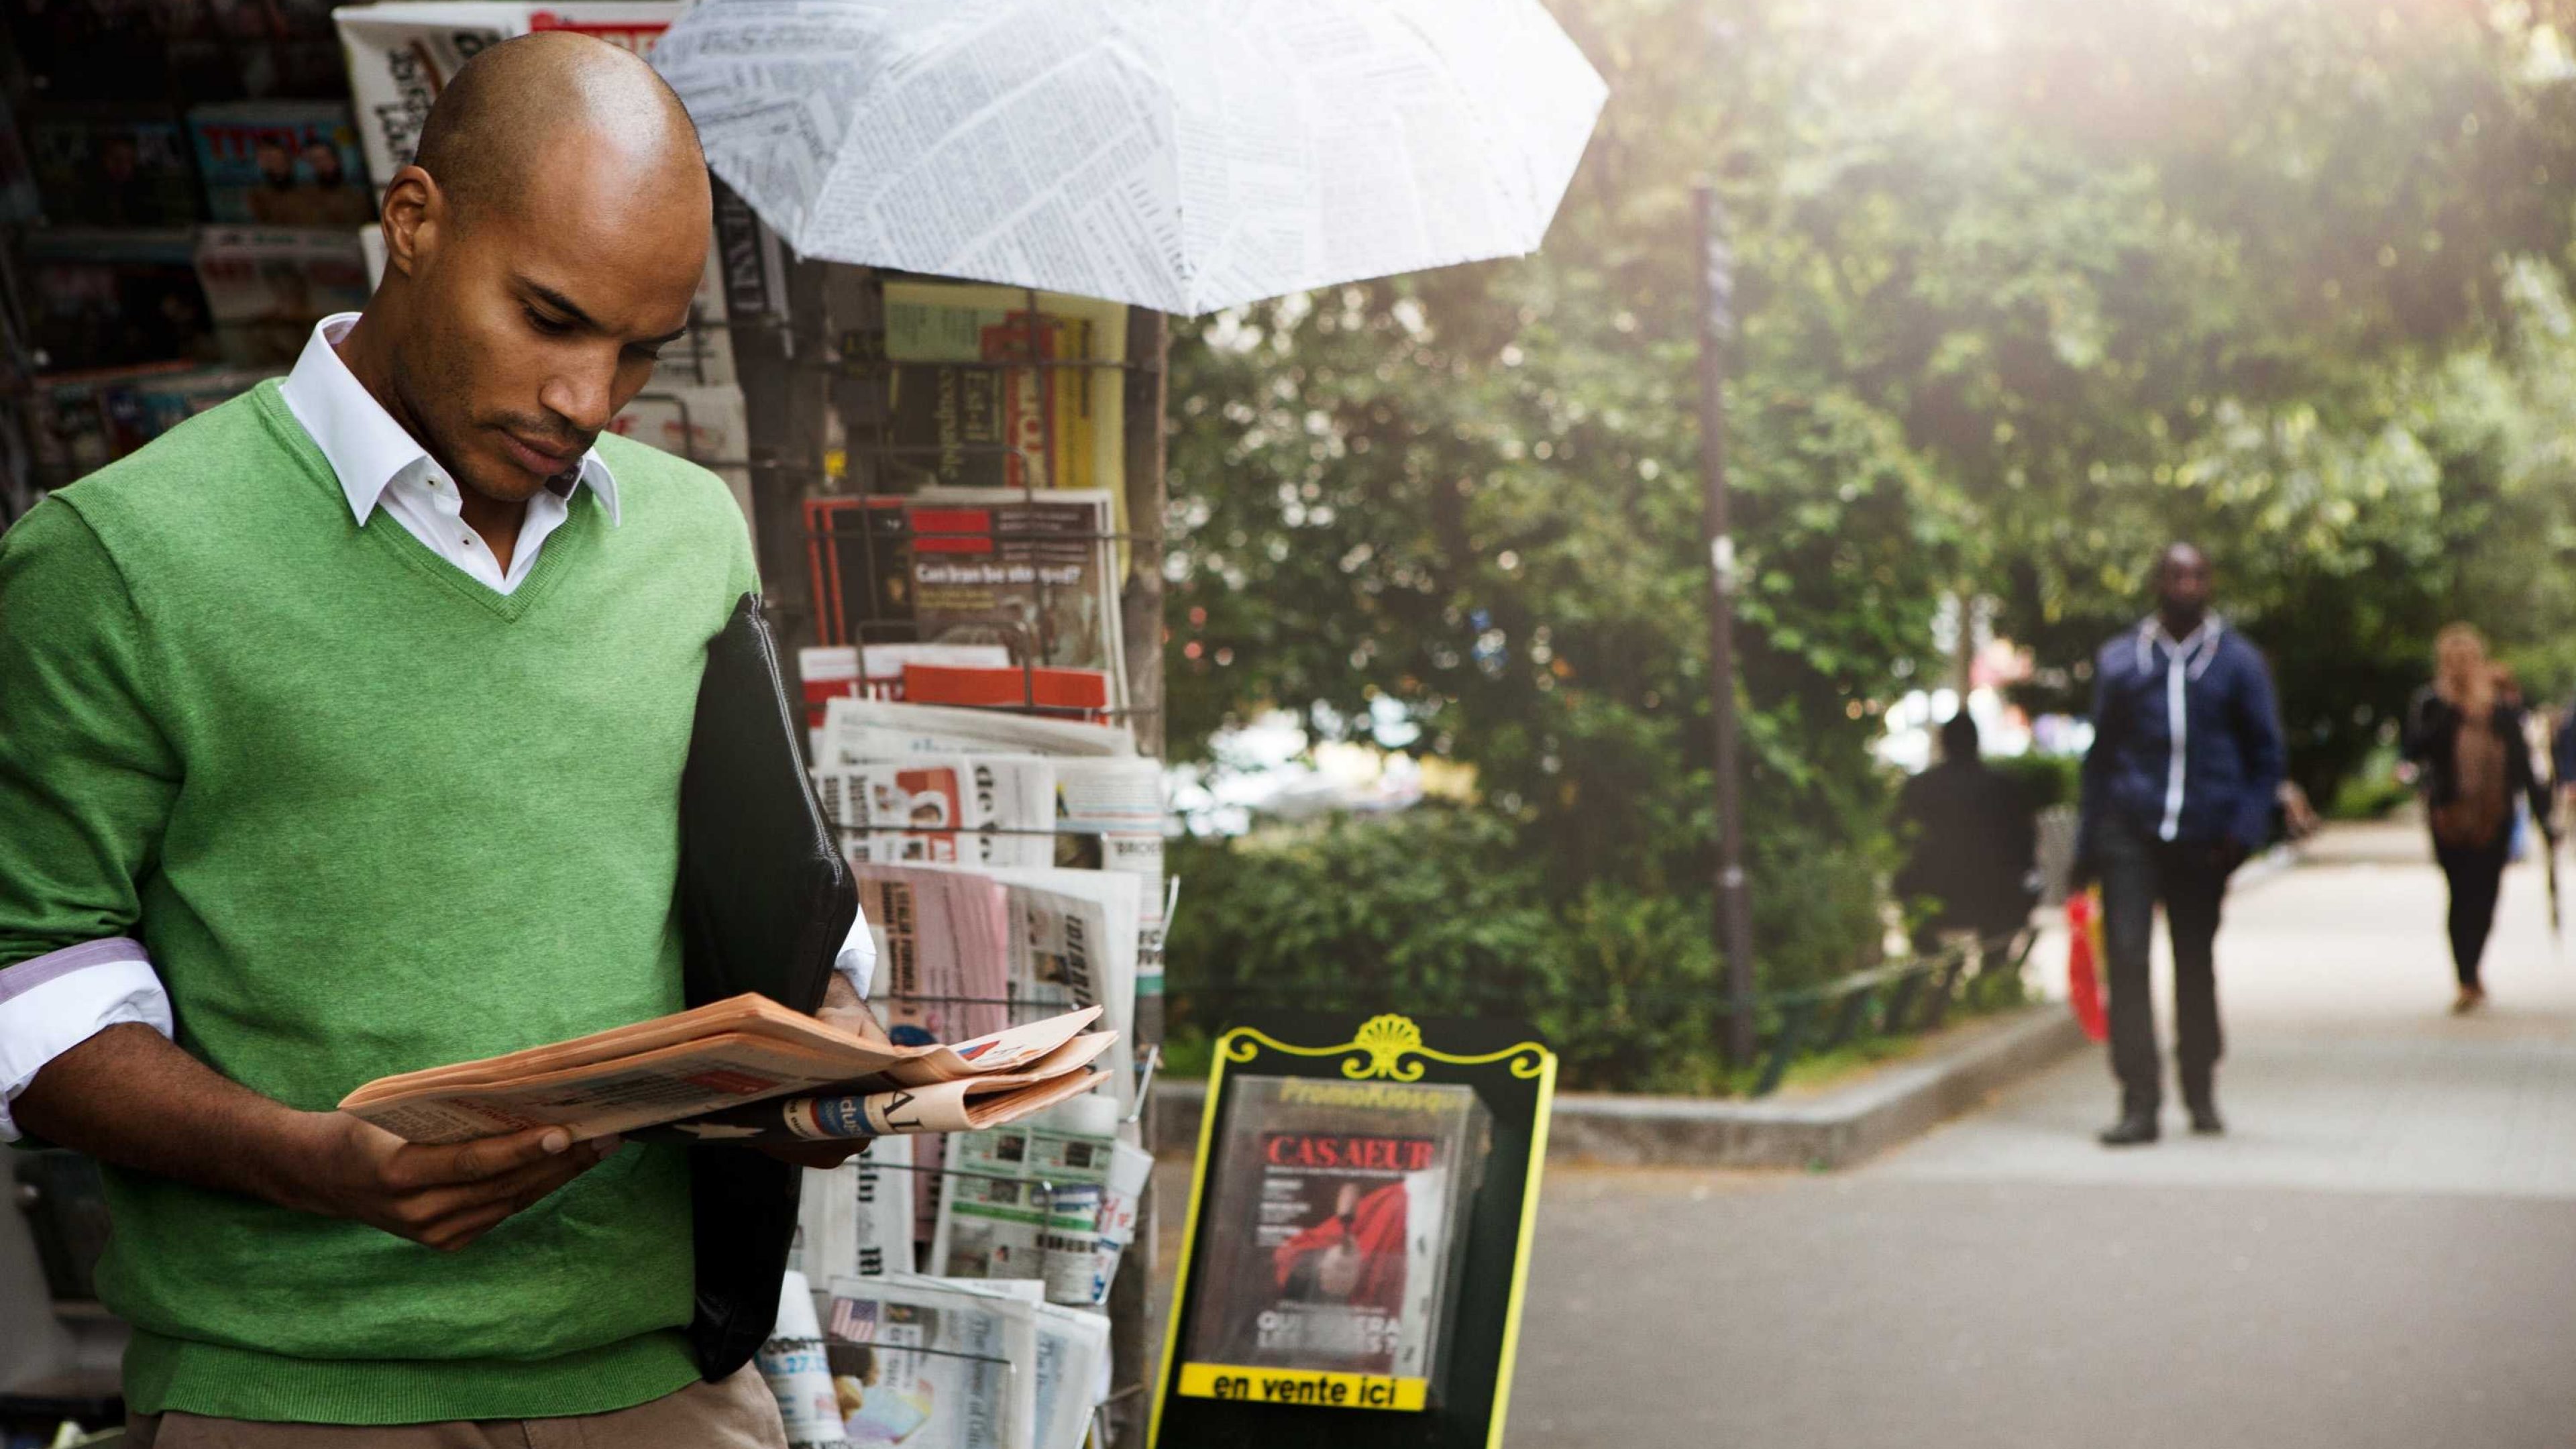 Ein Mann steht vor dem Kiosk und liest die Zeitung.